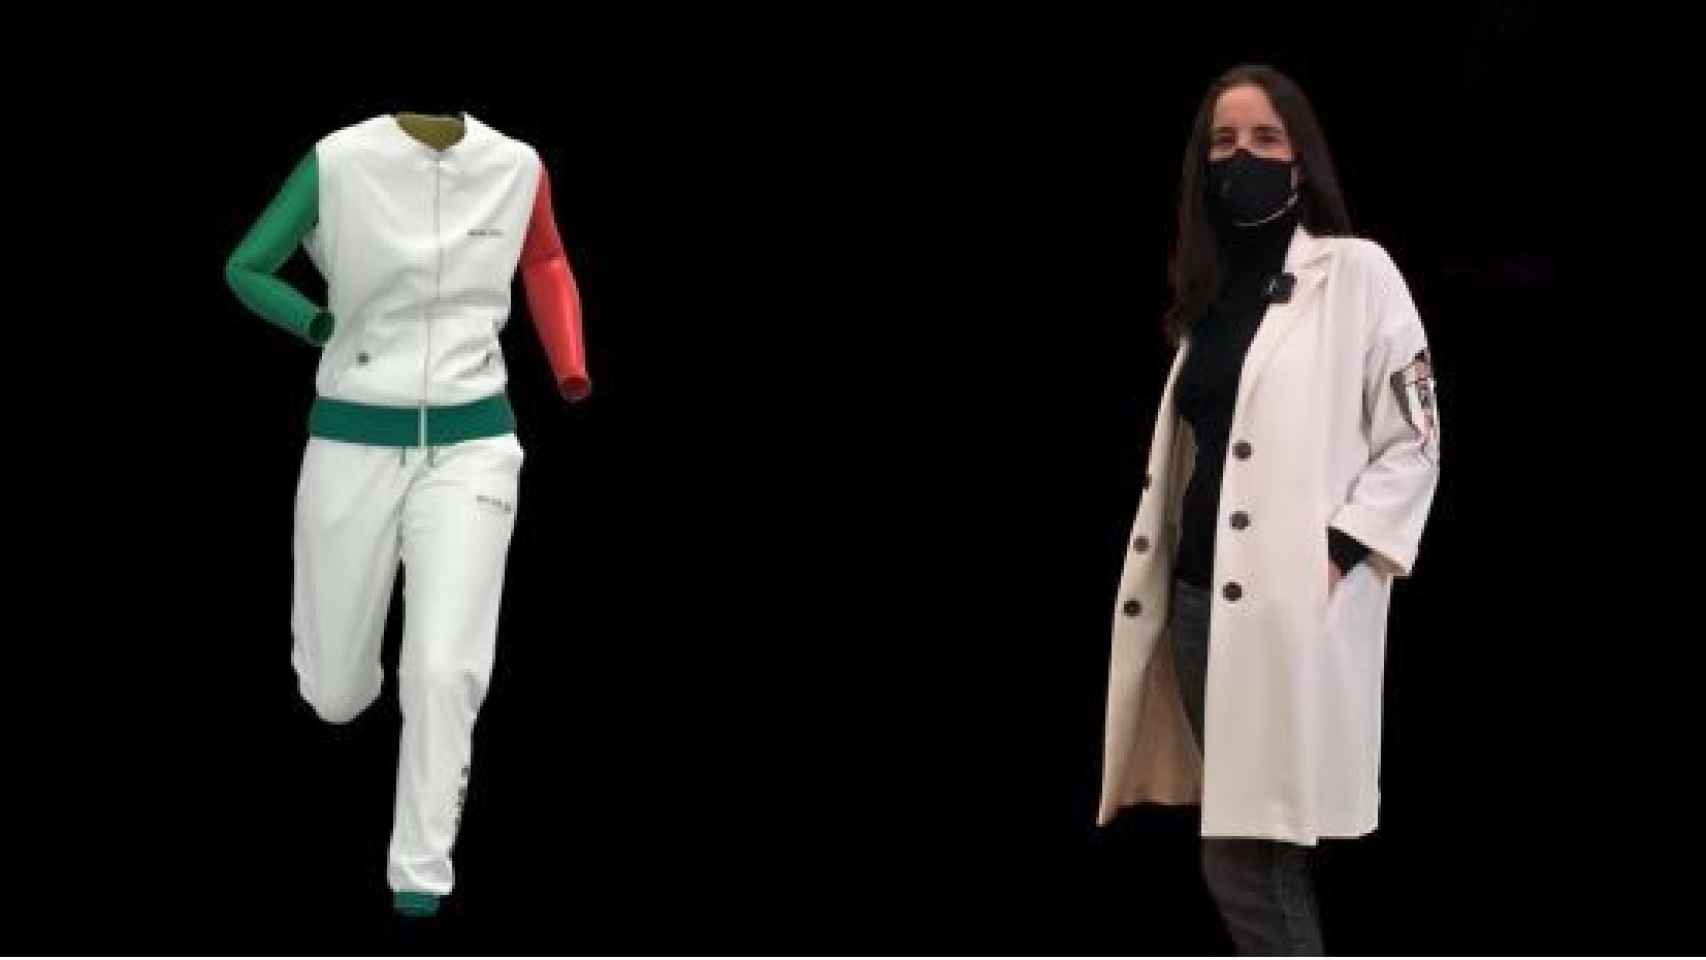 Isabel Basaldúa, Directora Creativa de La tecnocreativa y Basaldúa, presenta la primera colección 3D con estilismo virtual del mundo.